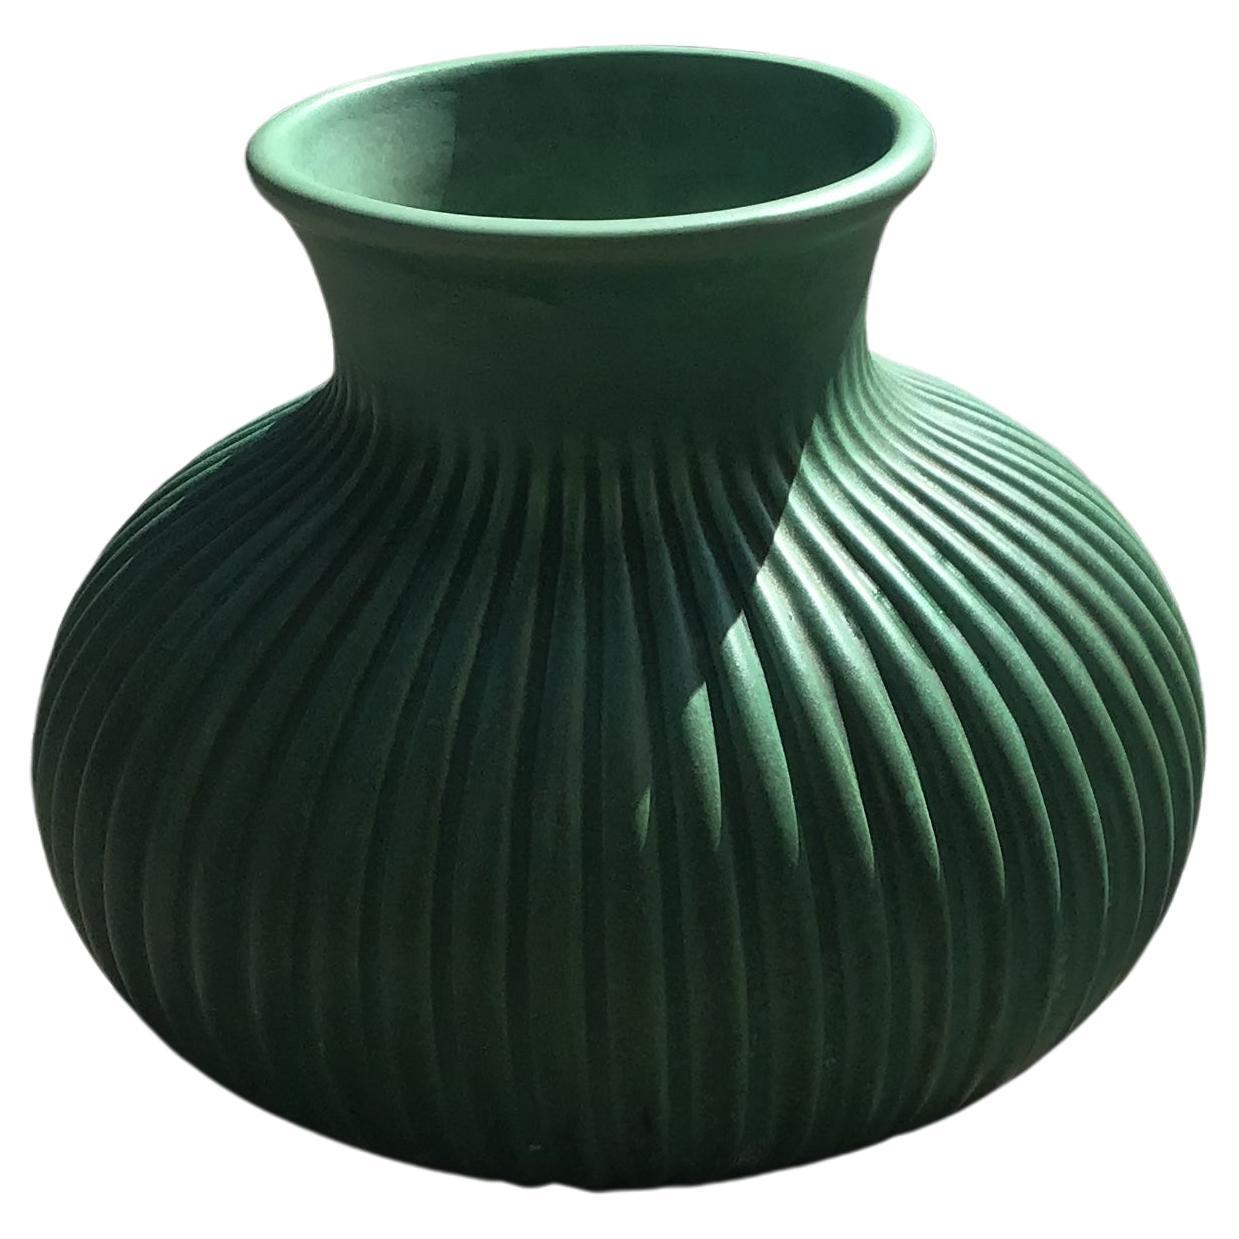 Richard Ginori Giovanni Gariboldi Vase Keramik, 1940, Italien